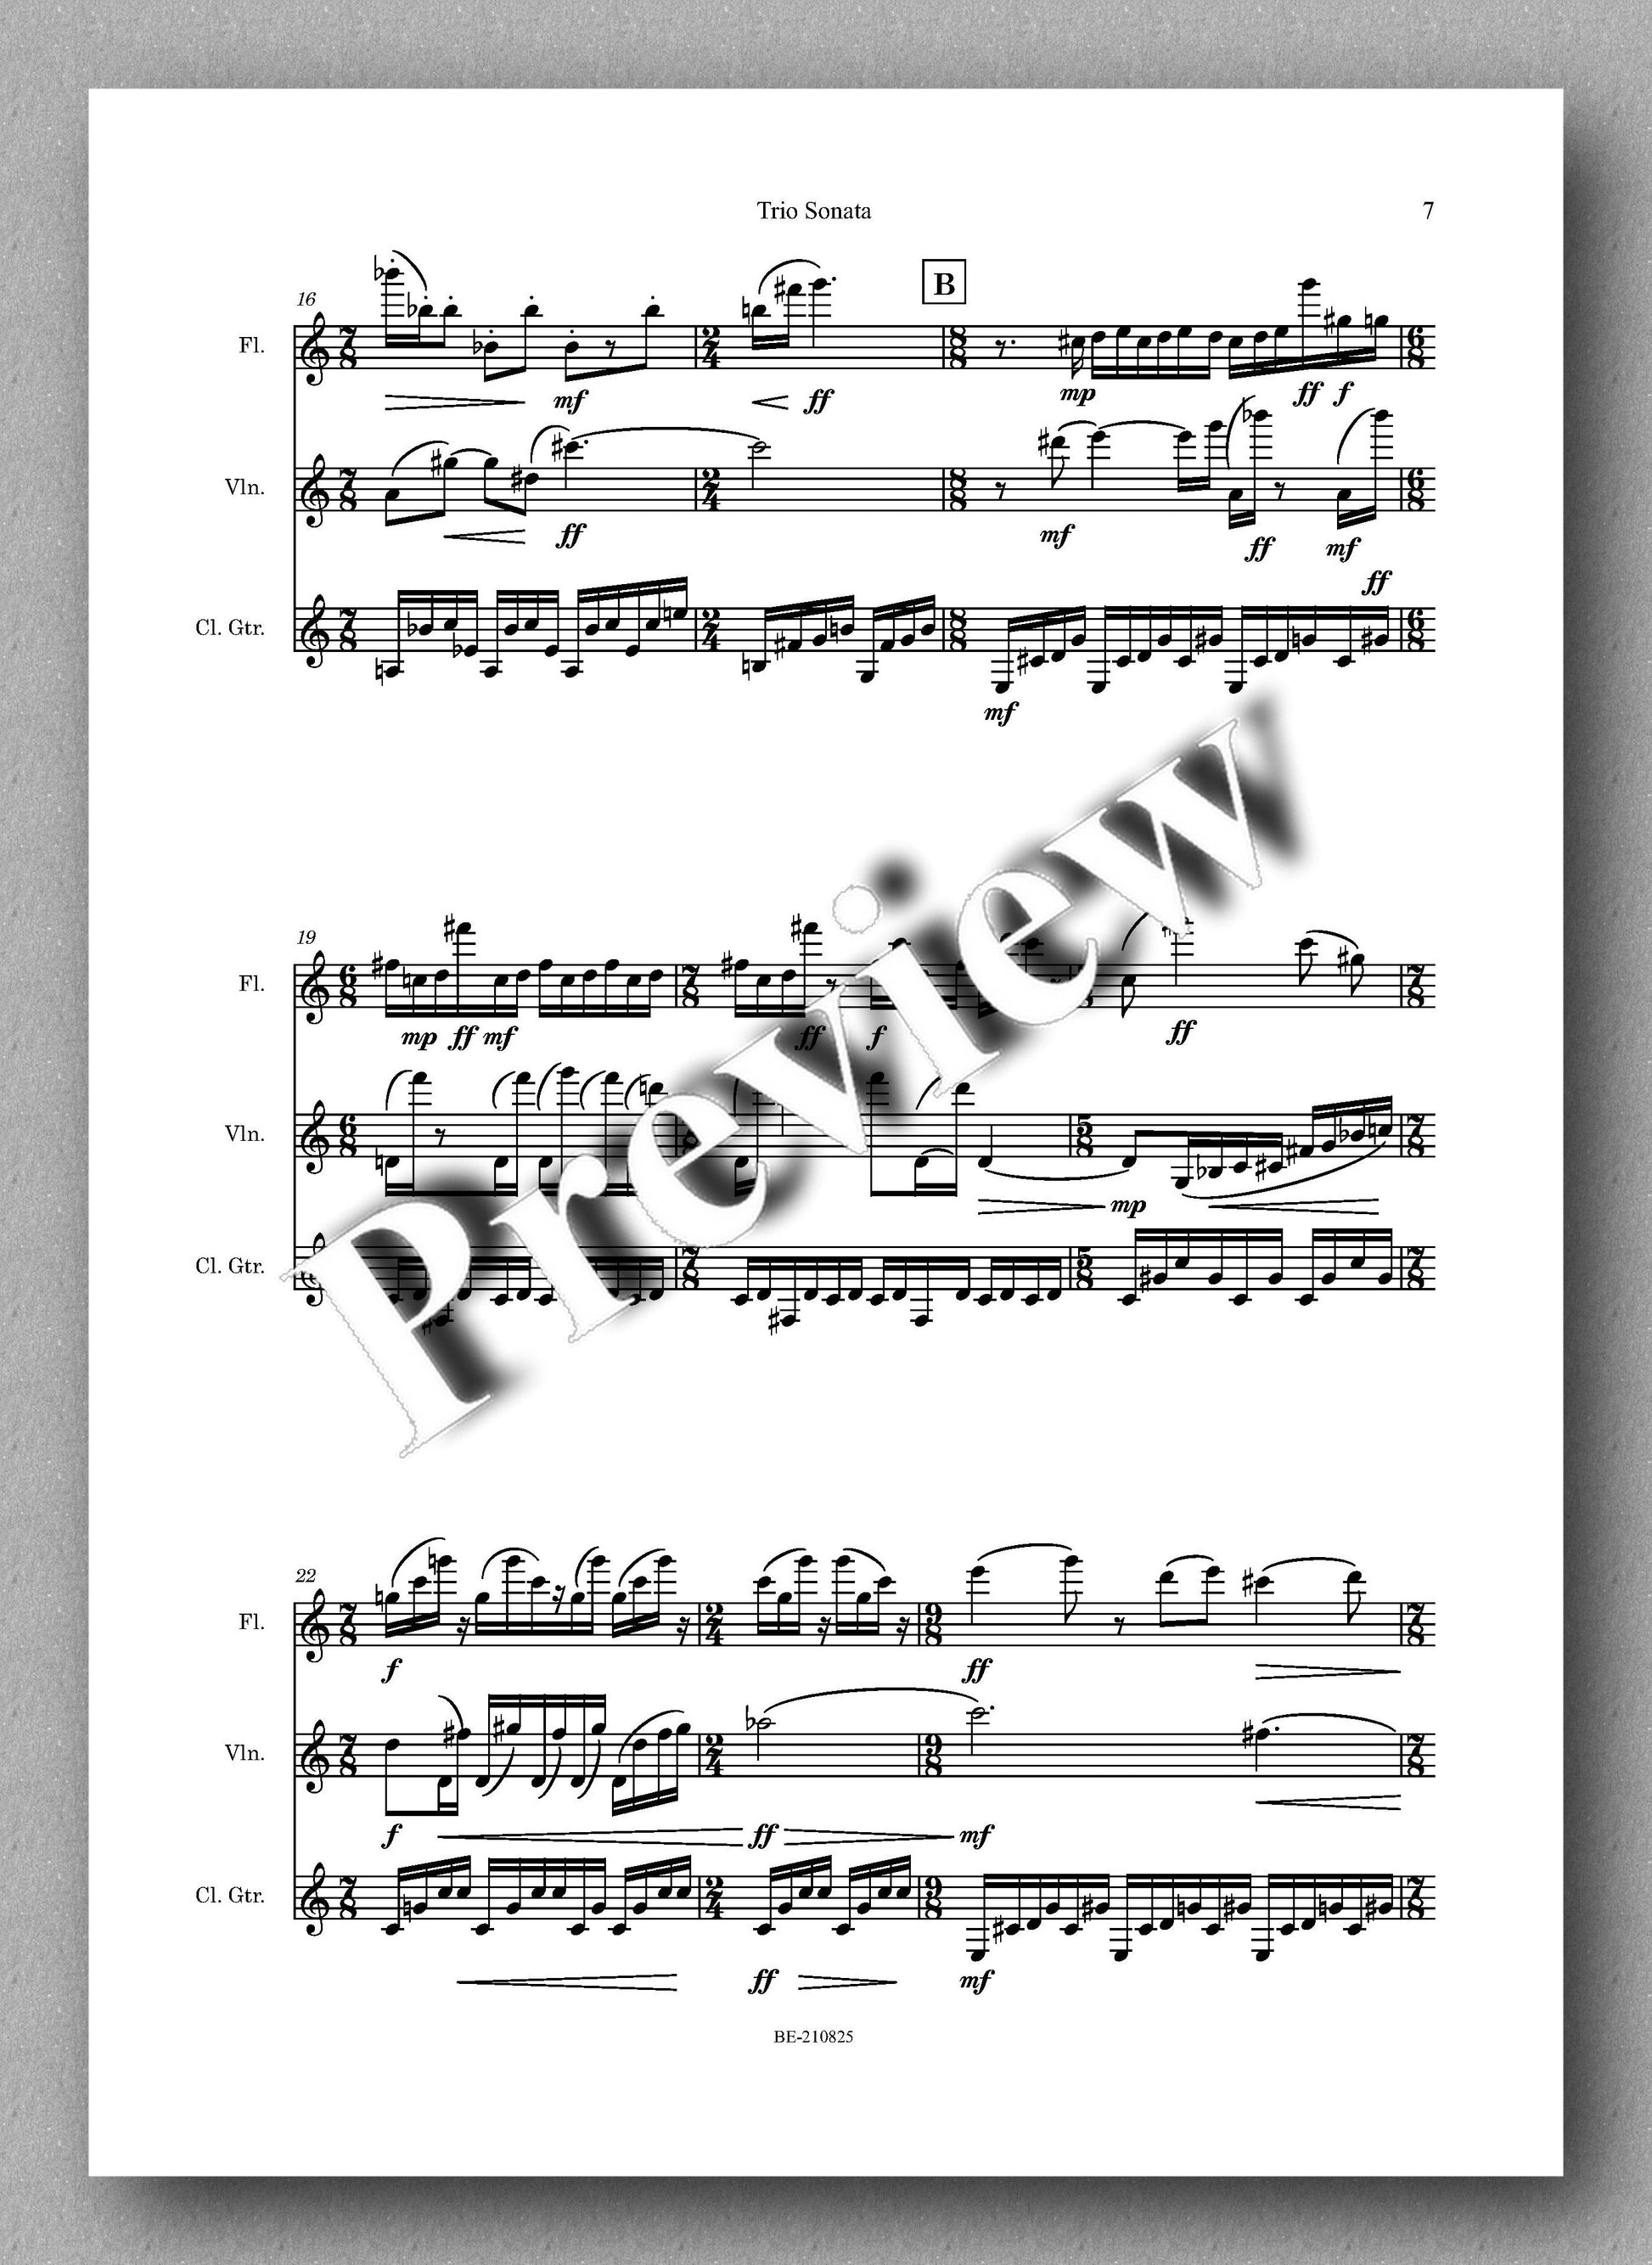 Saberi, Trio Sonata No. 1 - music score 3